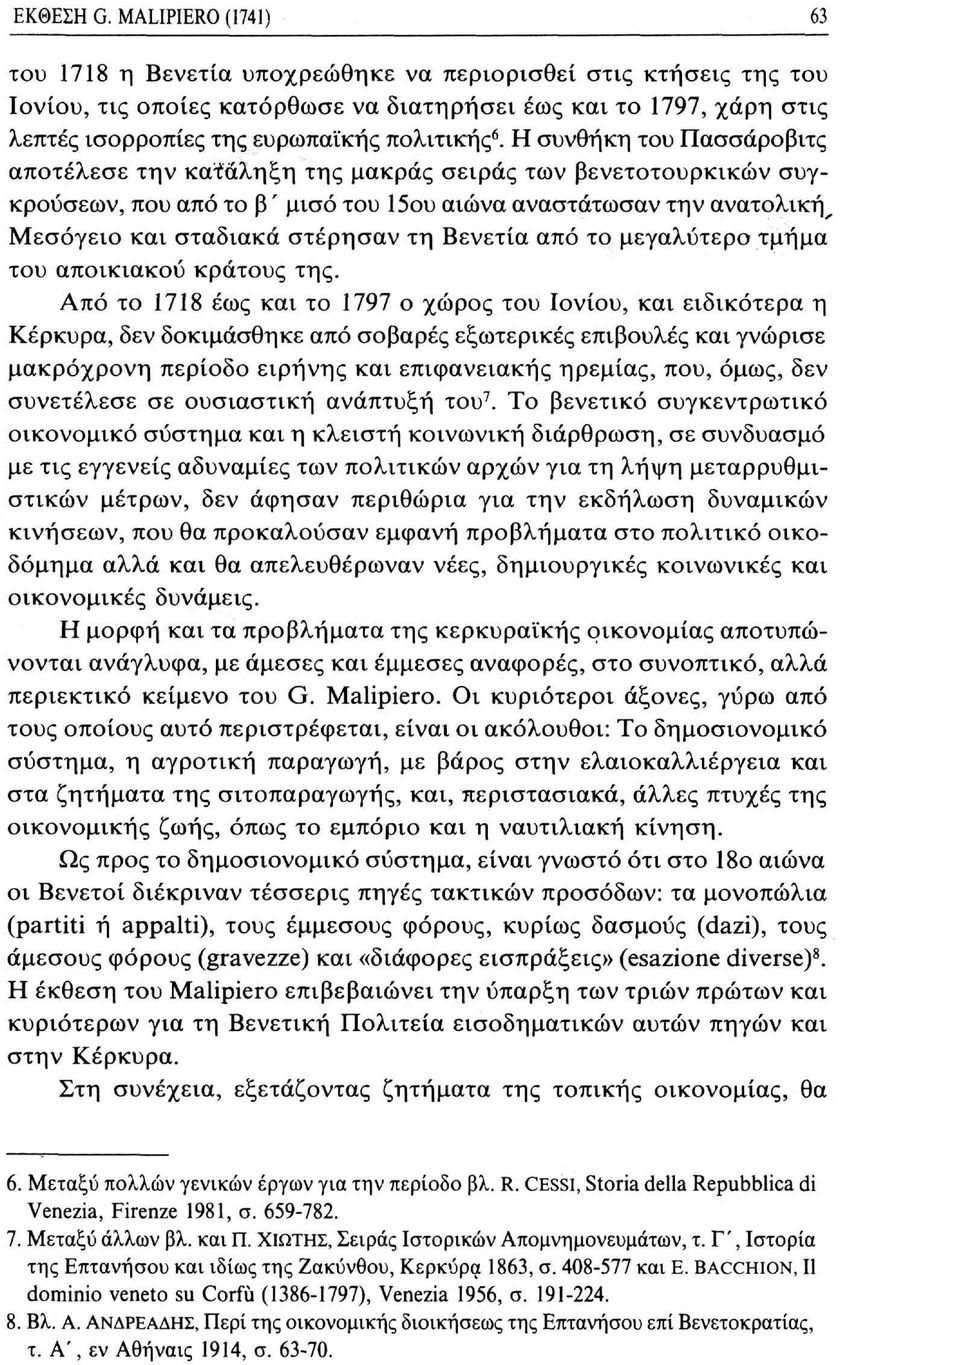 6. Η συνθήκη του Πασσάροβιτς αποτέλεσε την κατάληξη της μακράς σειράς των βενετοτουρκικών συγκρούσεων, που από το β ' μισό του 15ου αιώνα αναστάτωσαν την ανατολικής Μεσόγειο και σταδιακά στέρησαν τη